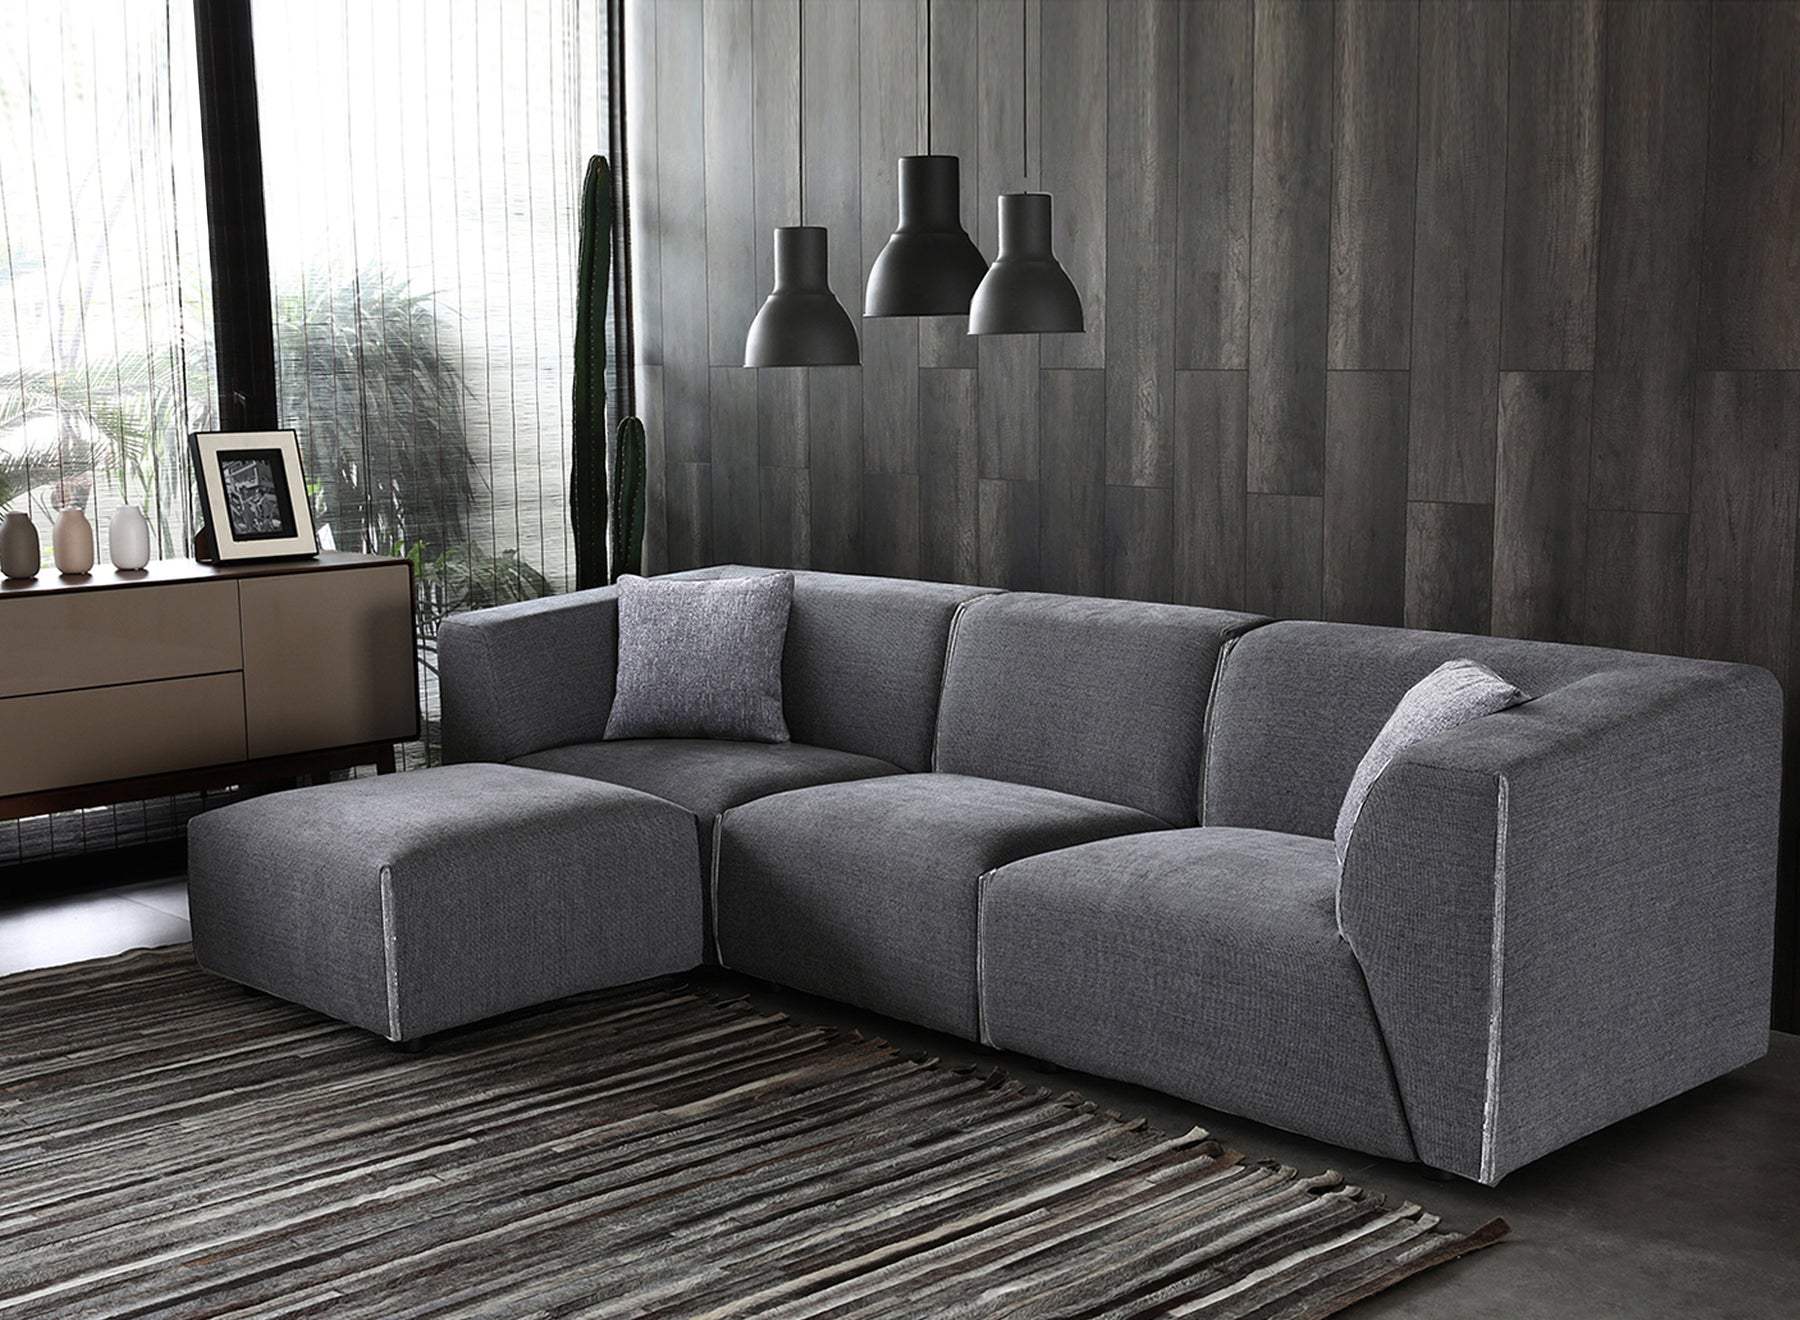 habitat modular sofa leather